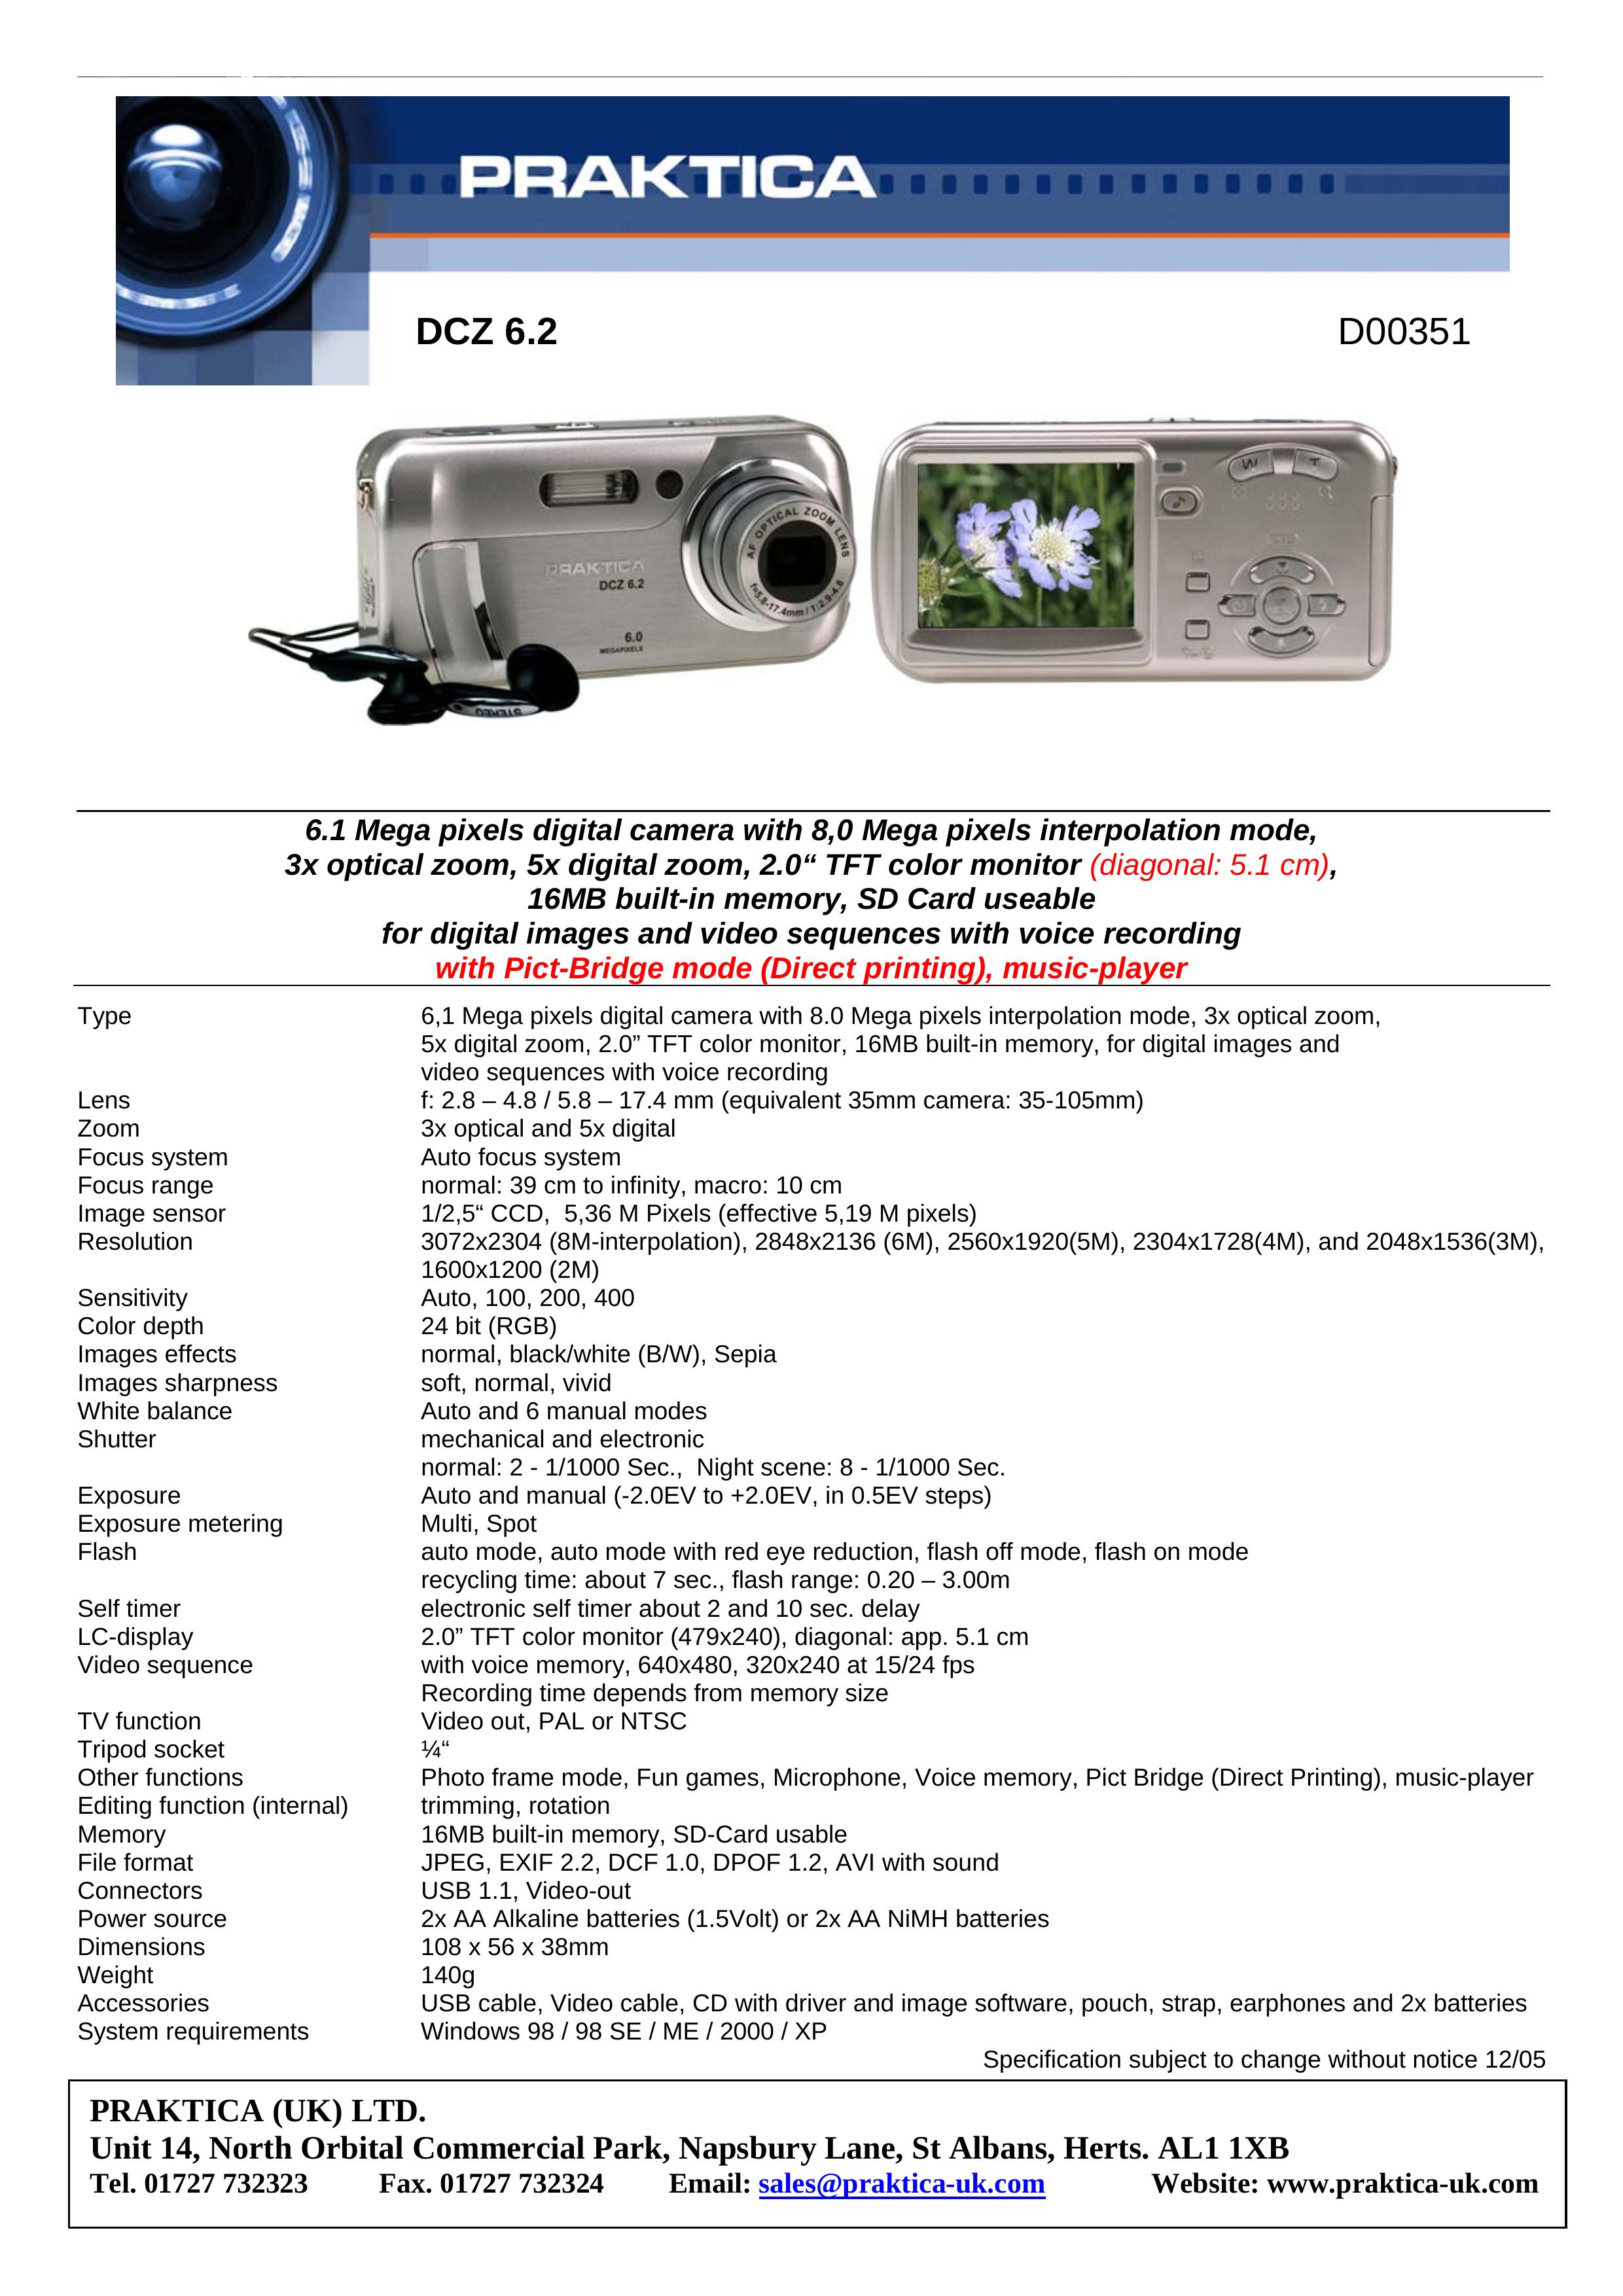 Praktica DCZ 6.2 Digital Camera User Manual